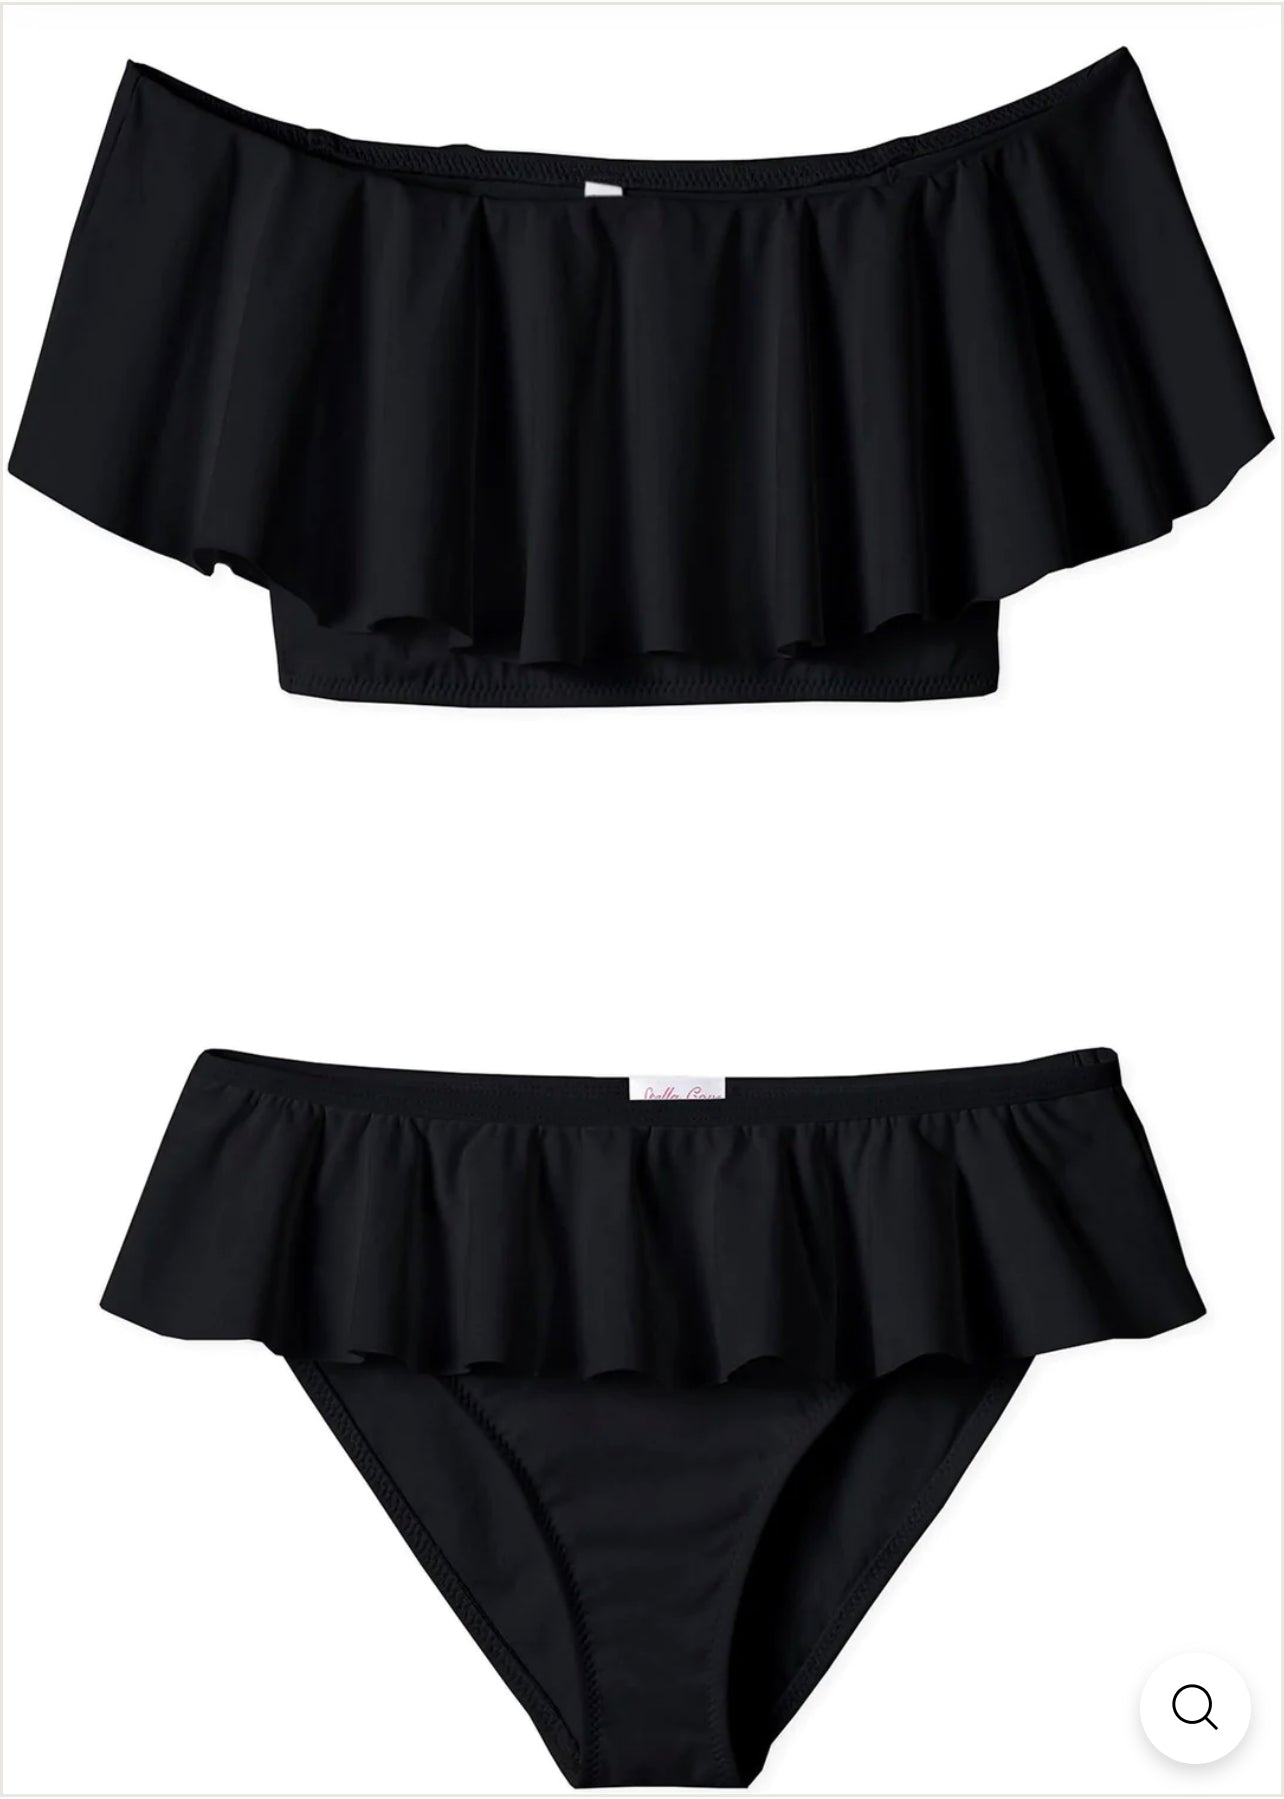 BLACK bikini - STELLA COVE | HOWTOKiSSAFROG